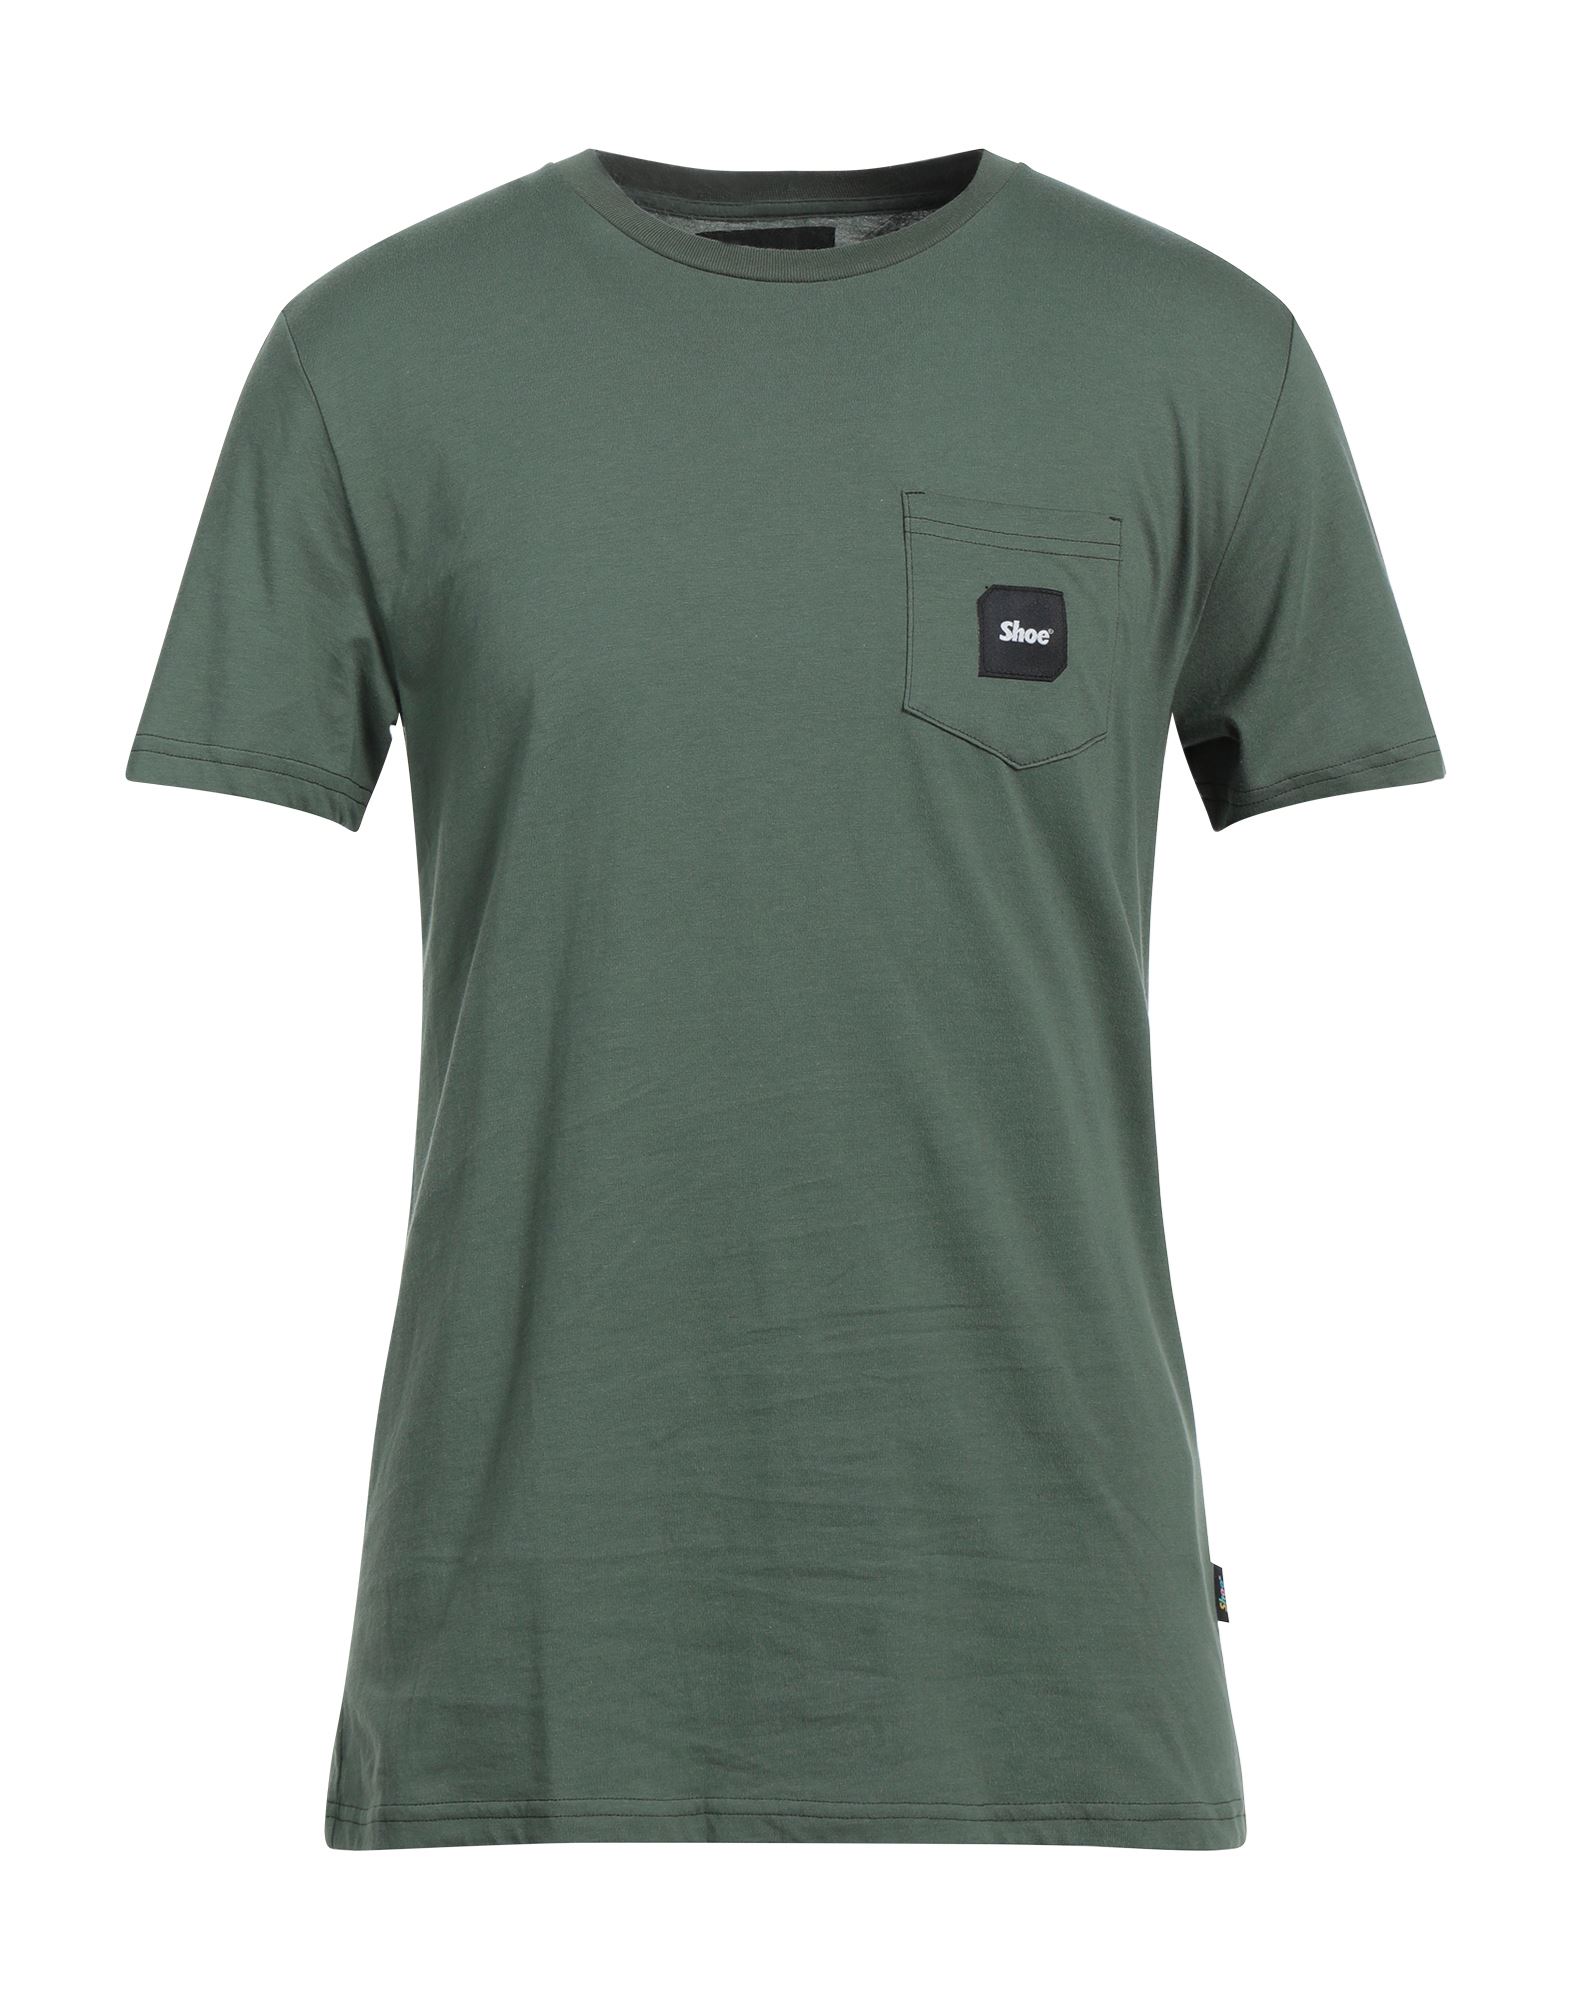 Shoe® T-shirts In Green